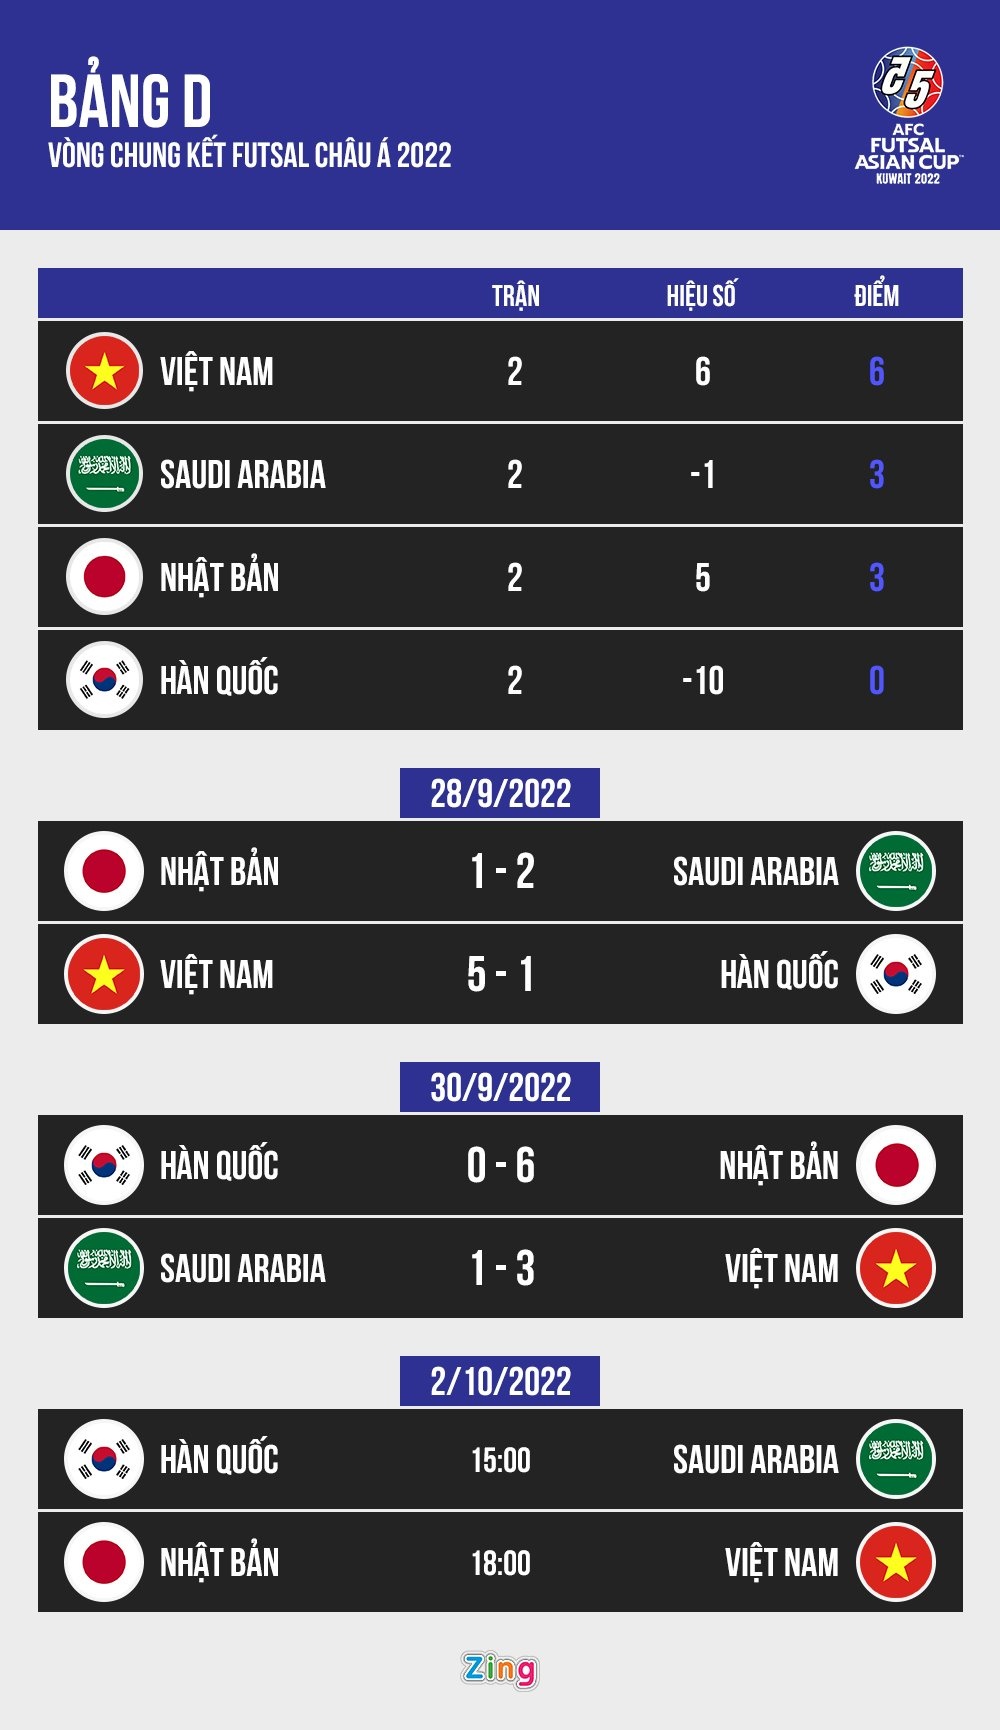 HLV Nhật Bản coi trận gặp futsal Việt Nam là chung kết - ảnh 3